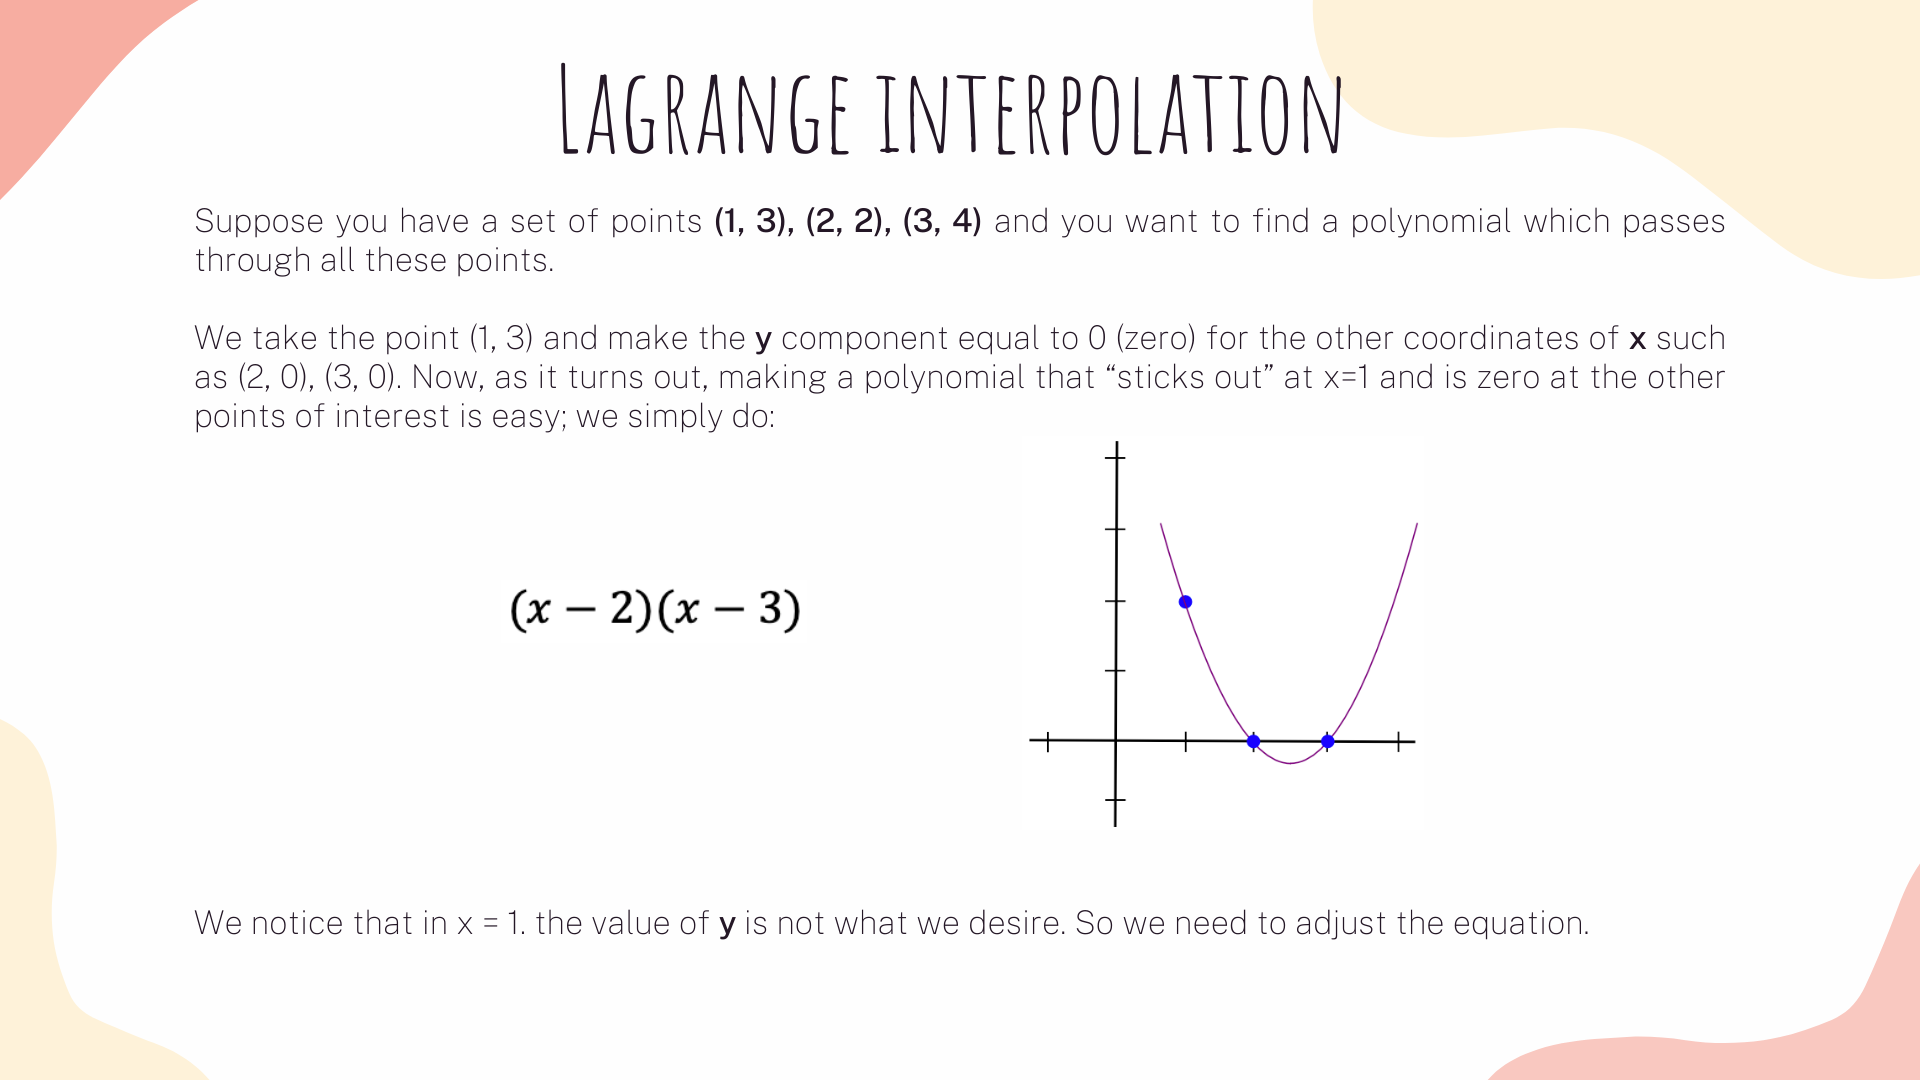 Lagrange interpolation